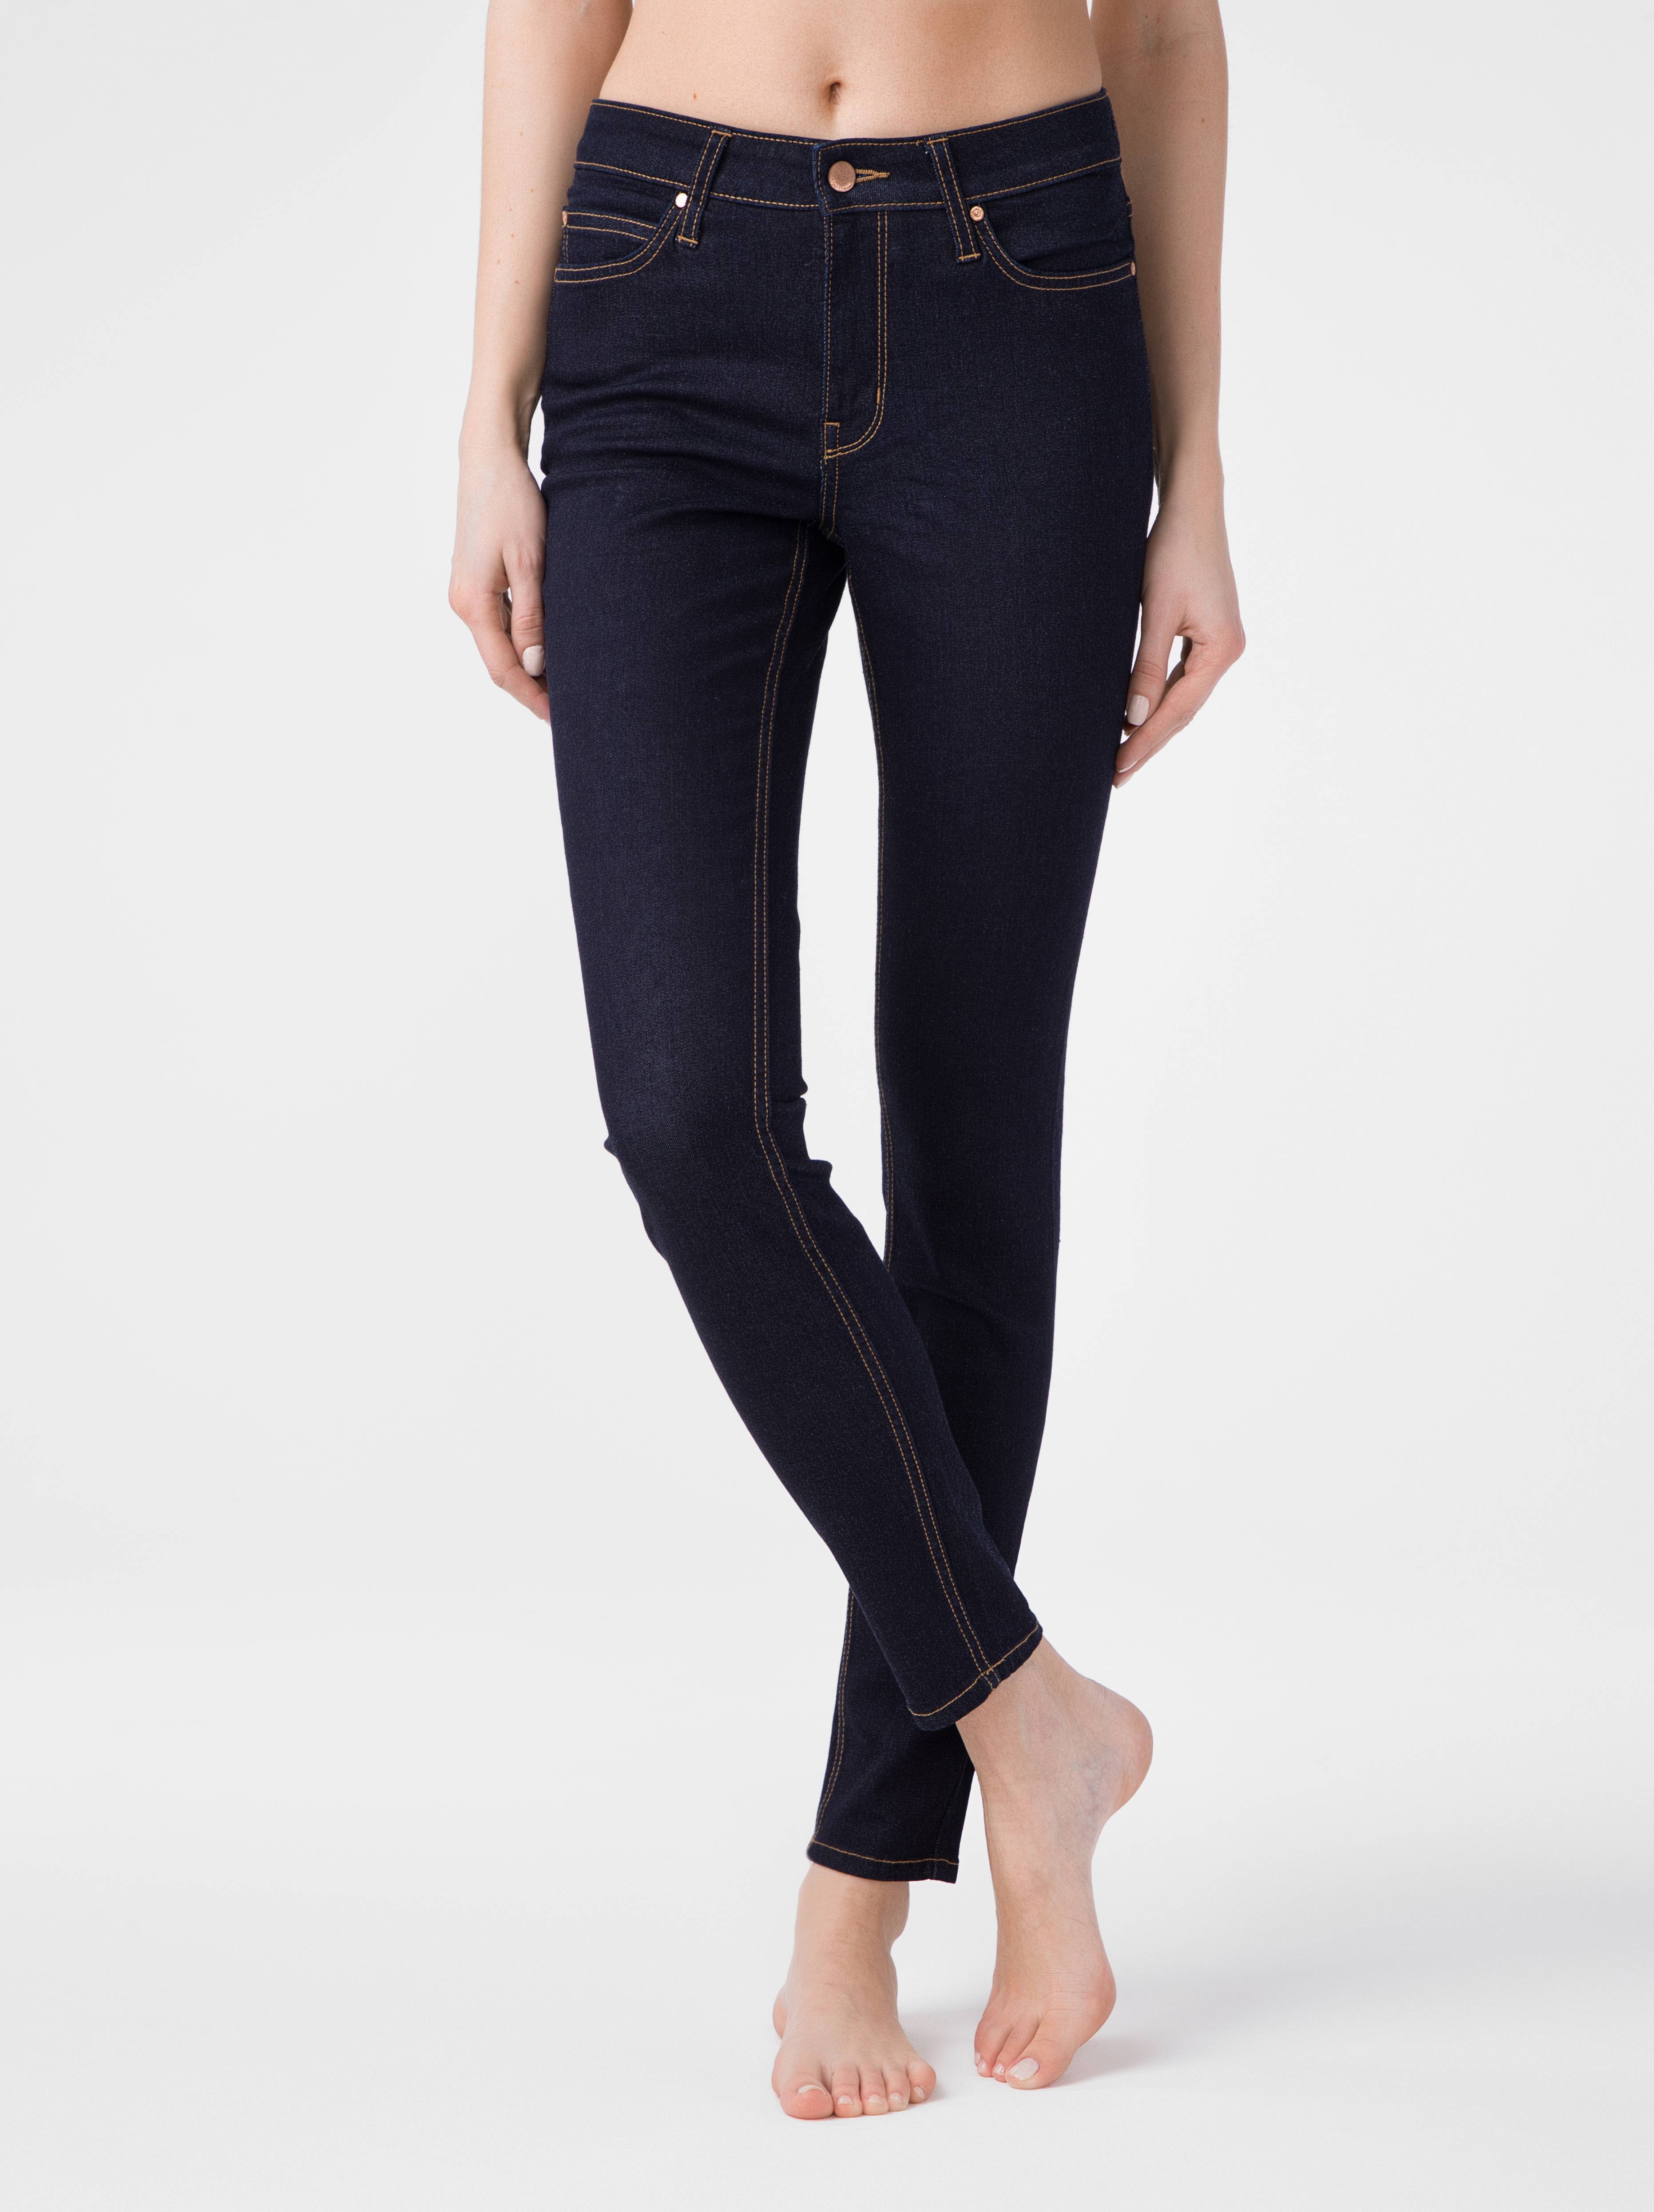 Ультракомфорные eco-friendly джинсы skinny со средней посадкой CON-183 Conte ⭐️, цвет indigo, размер 164-102 - фото 1